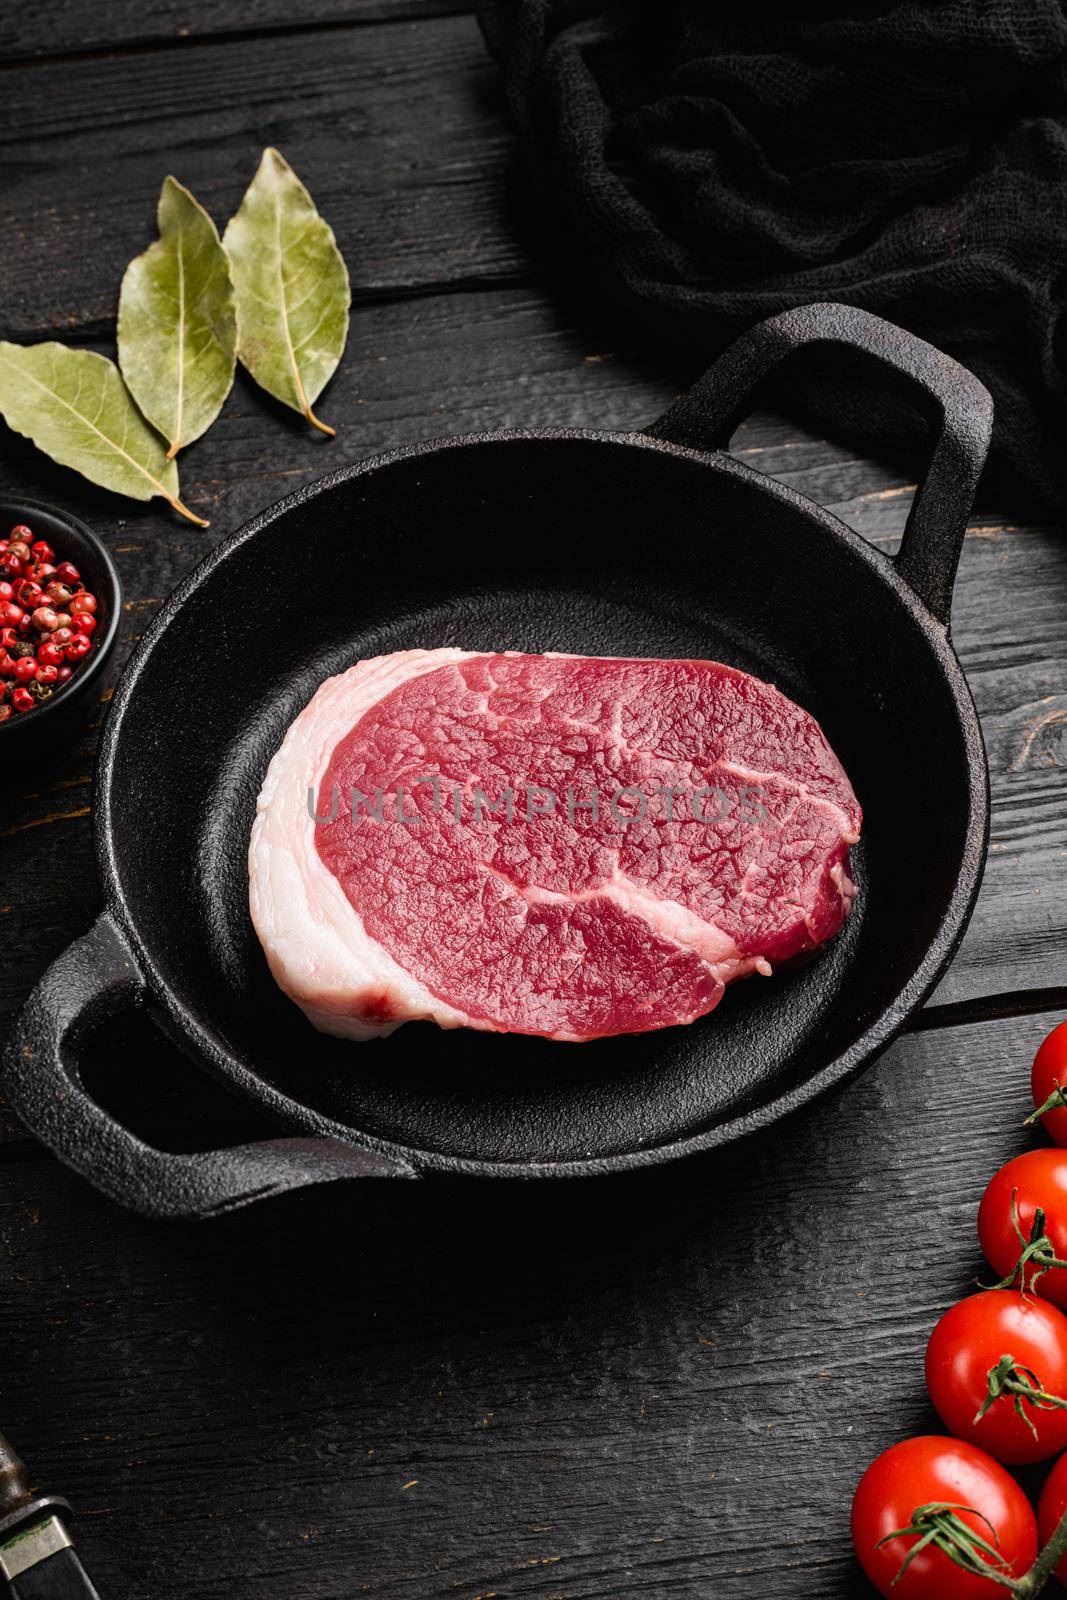 Raw tenderloin steak, on black wooden table background by Ilianesolenyi